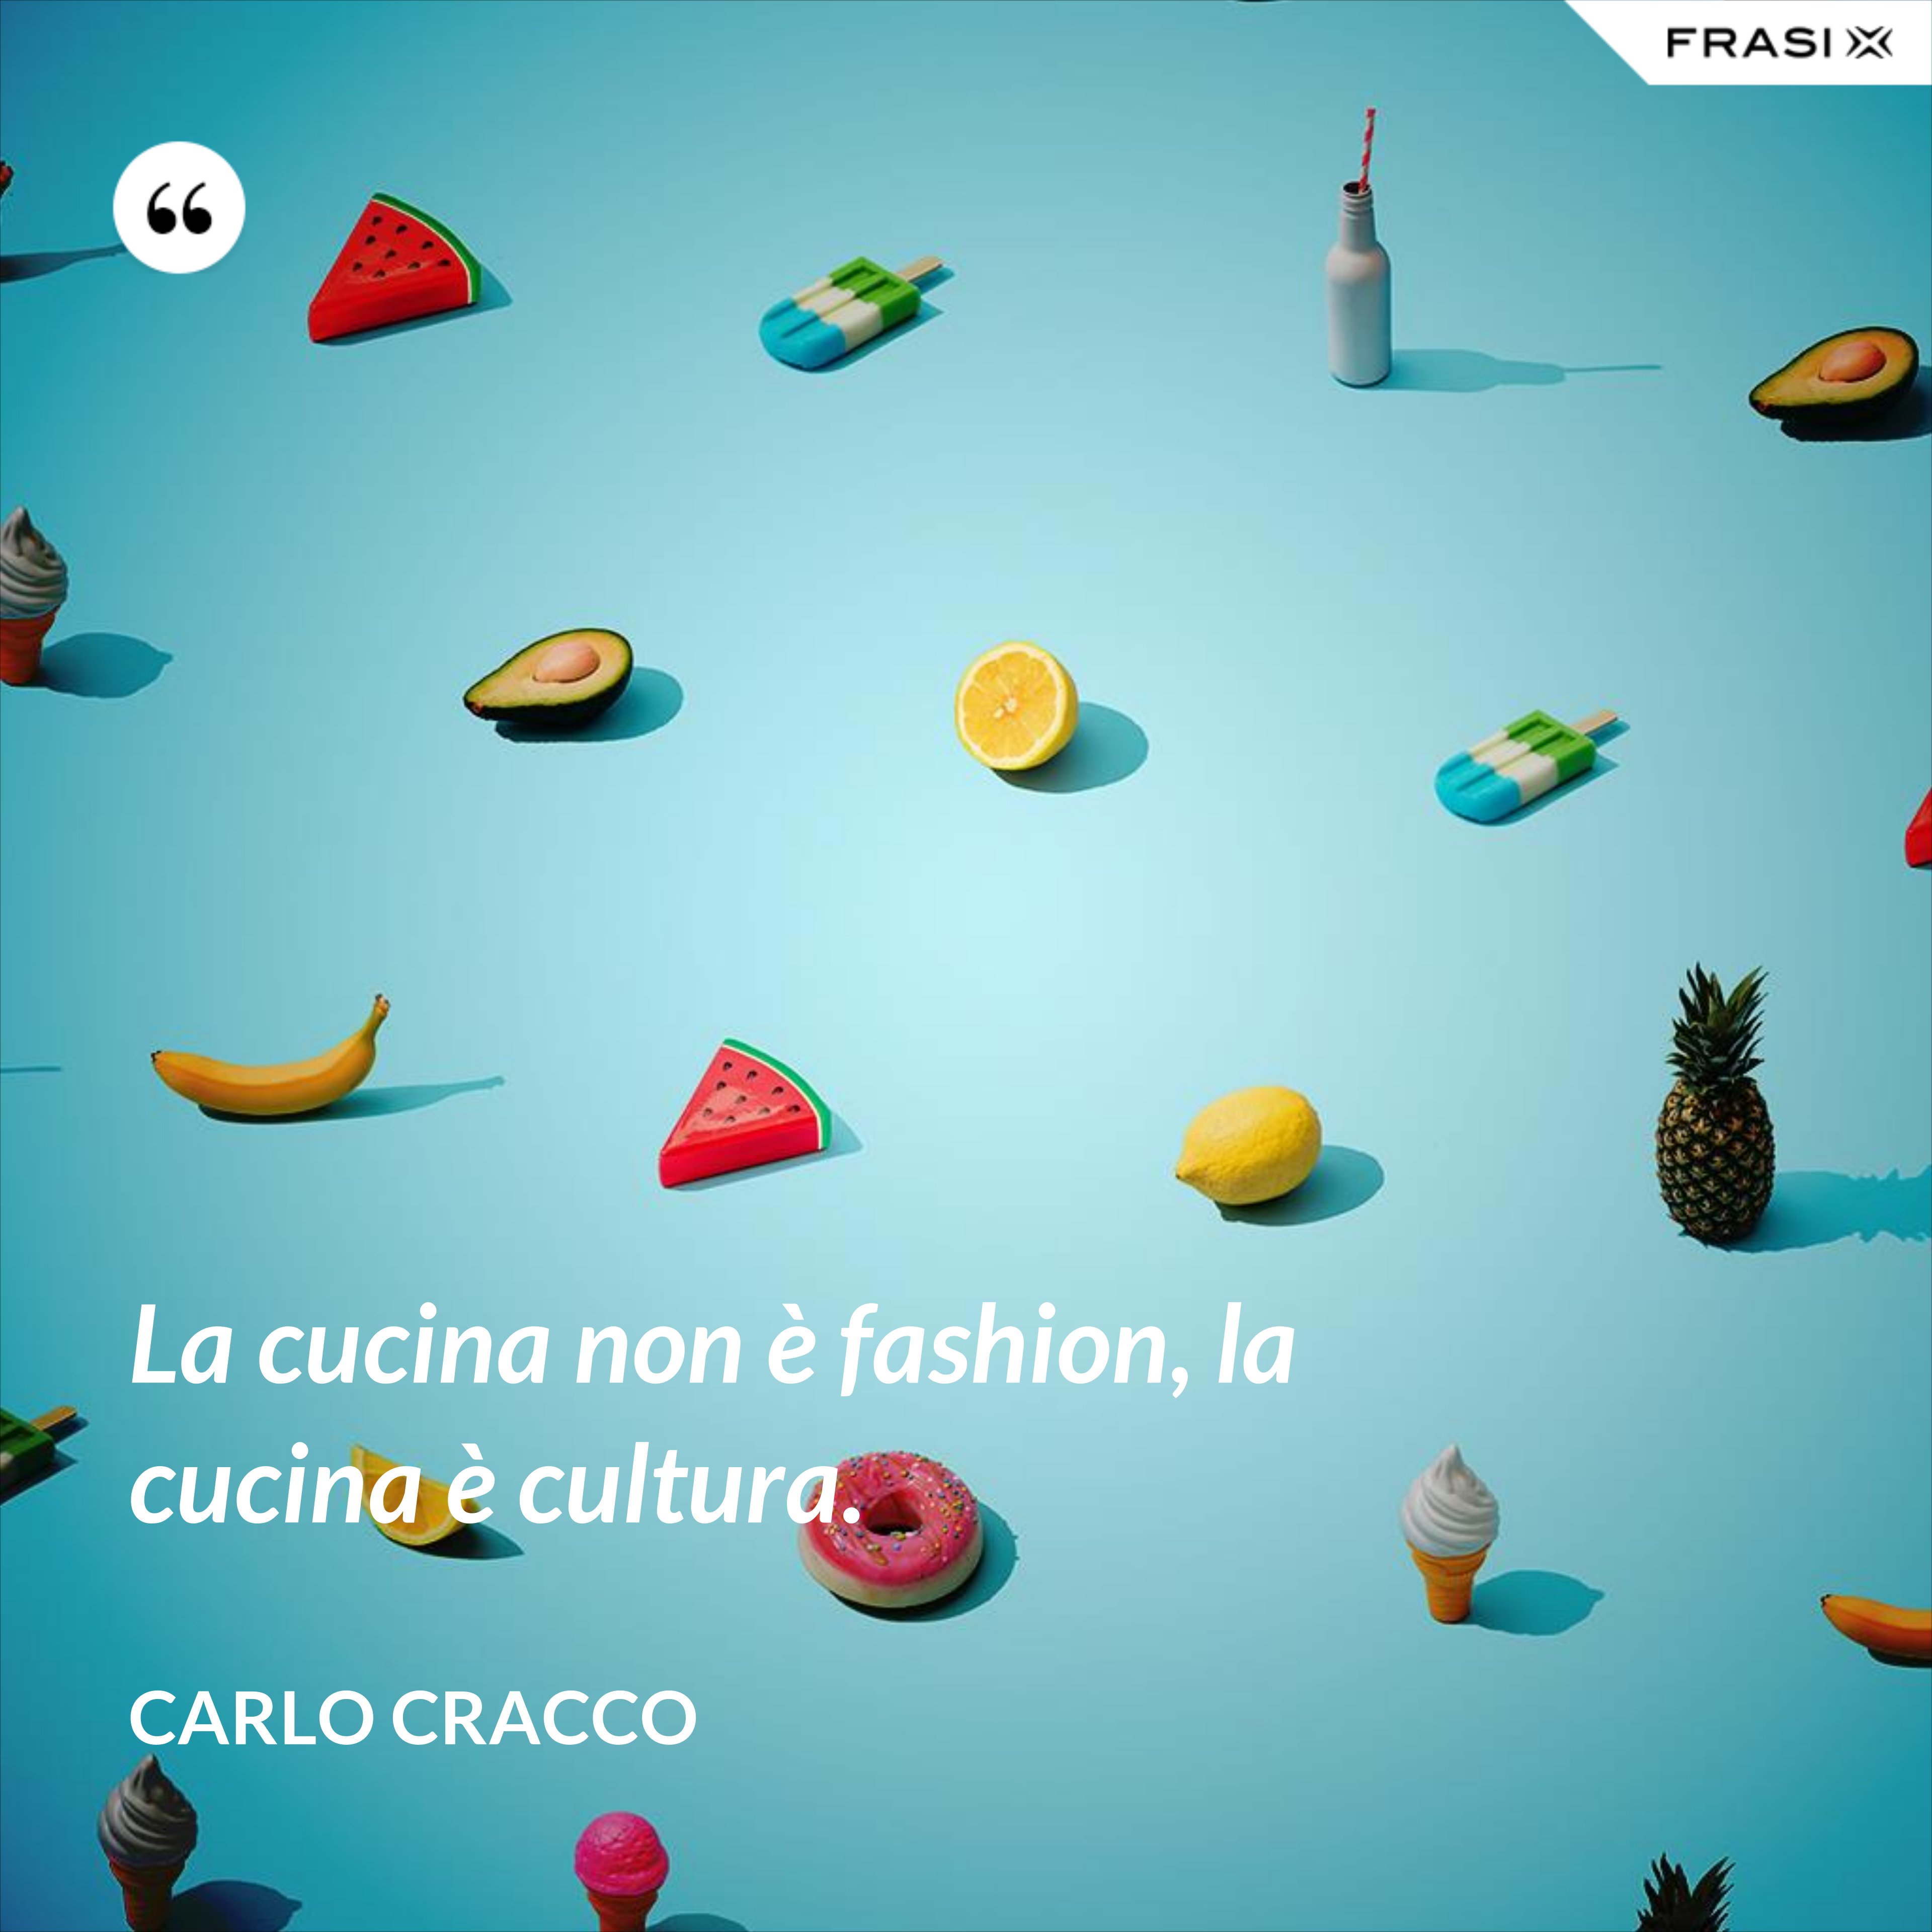 La cucina non è fashion, la cucina è cultura. - Carlo Cracco